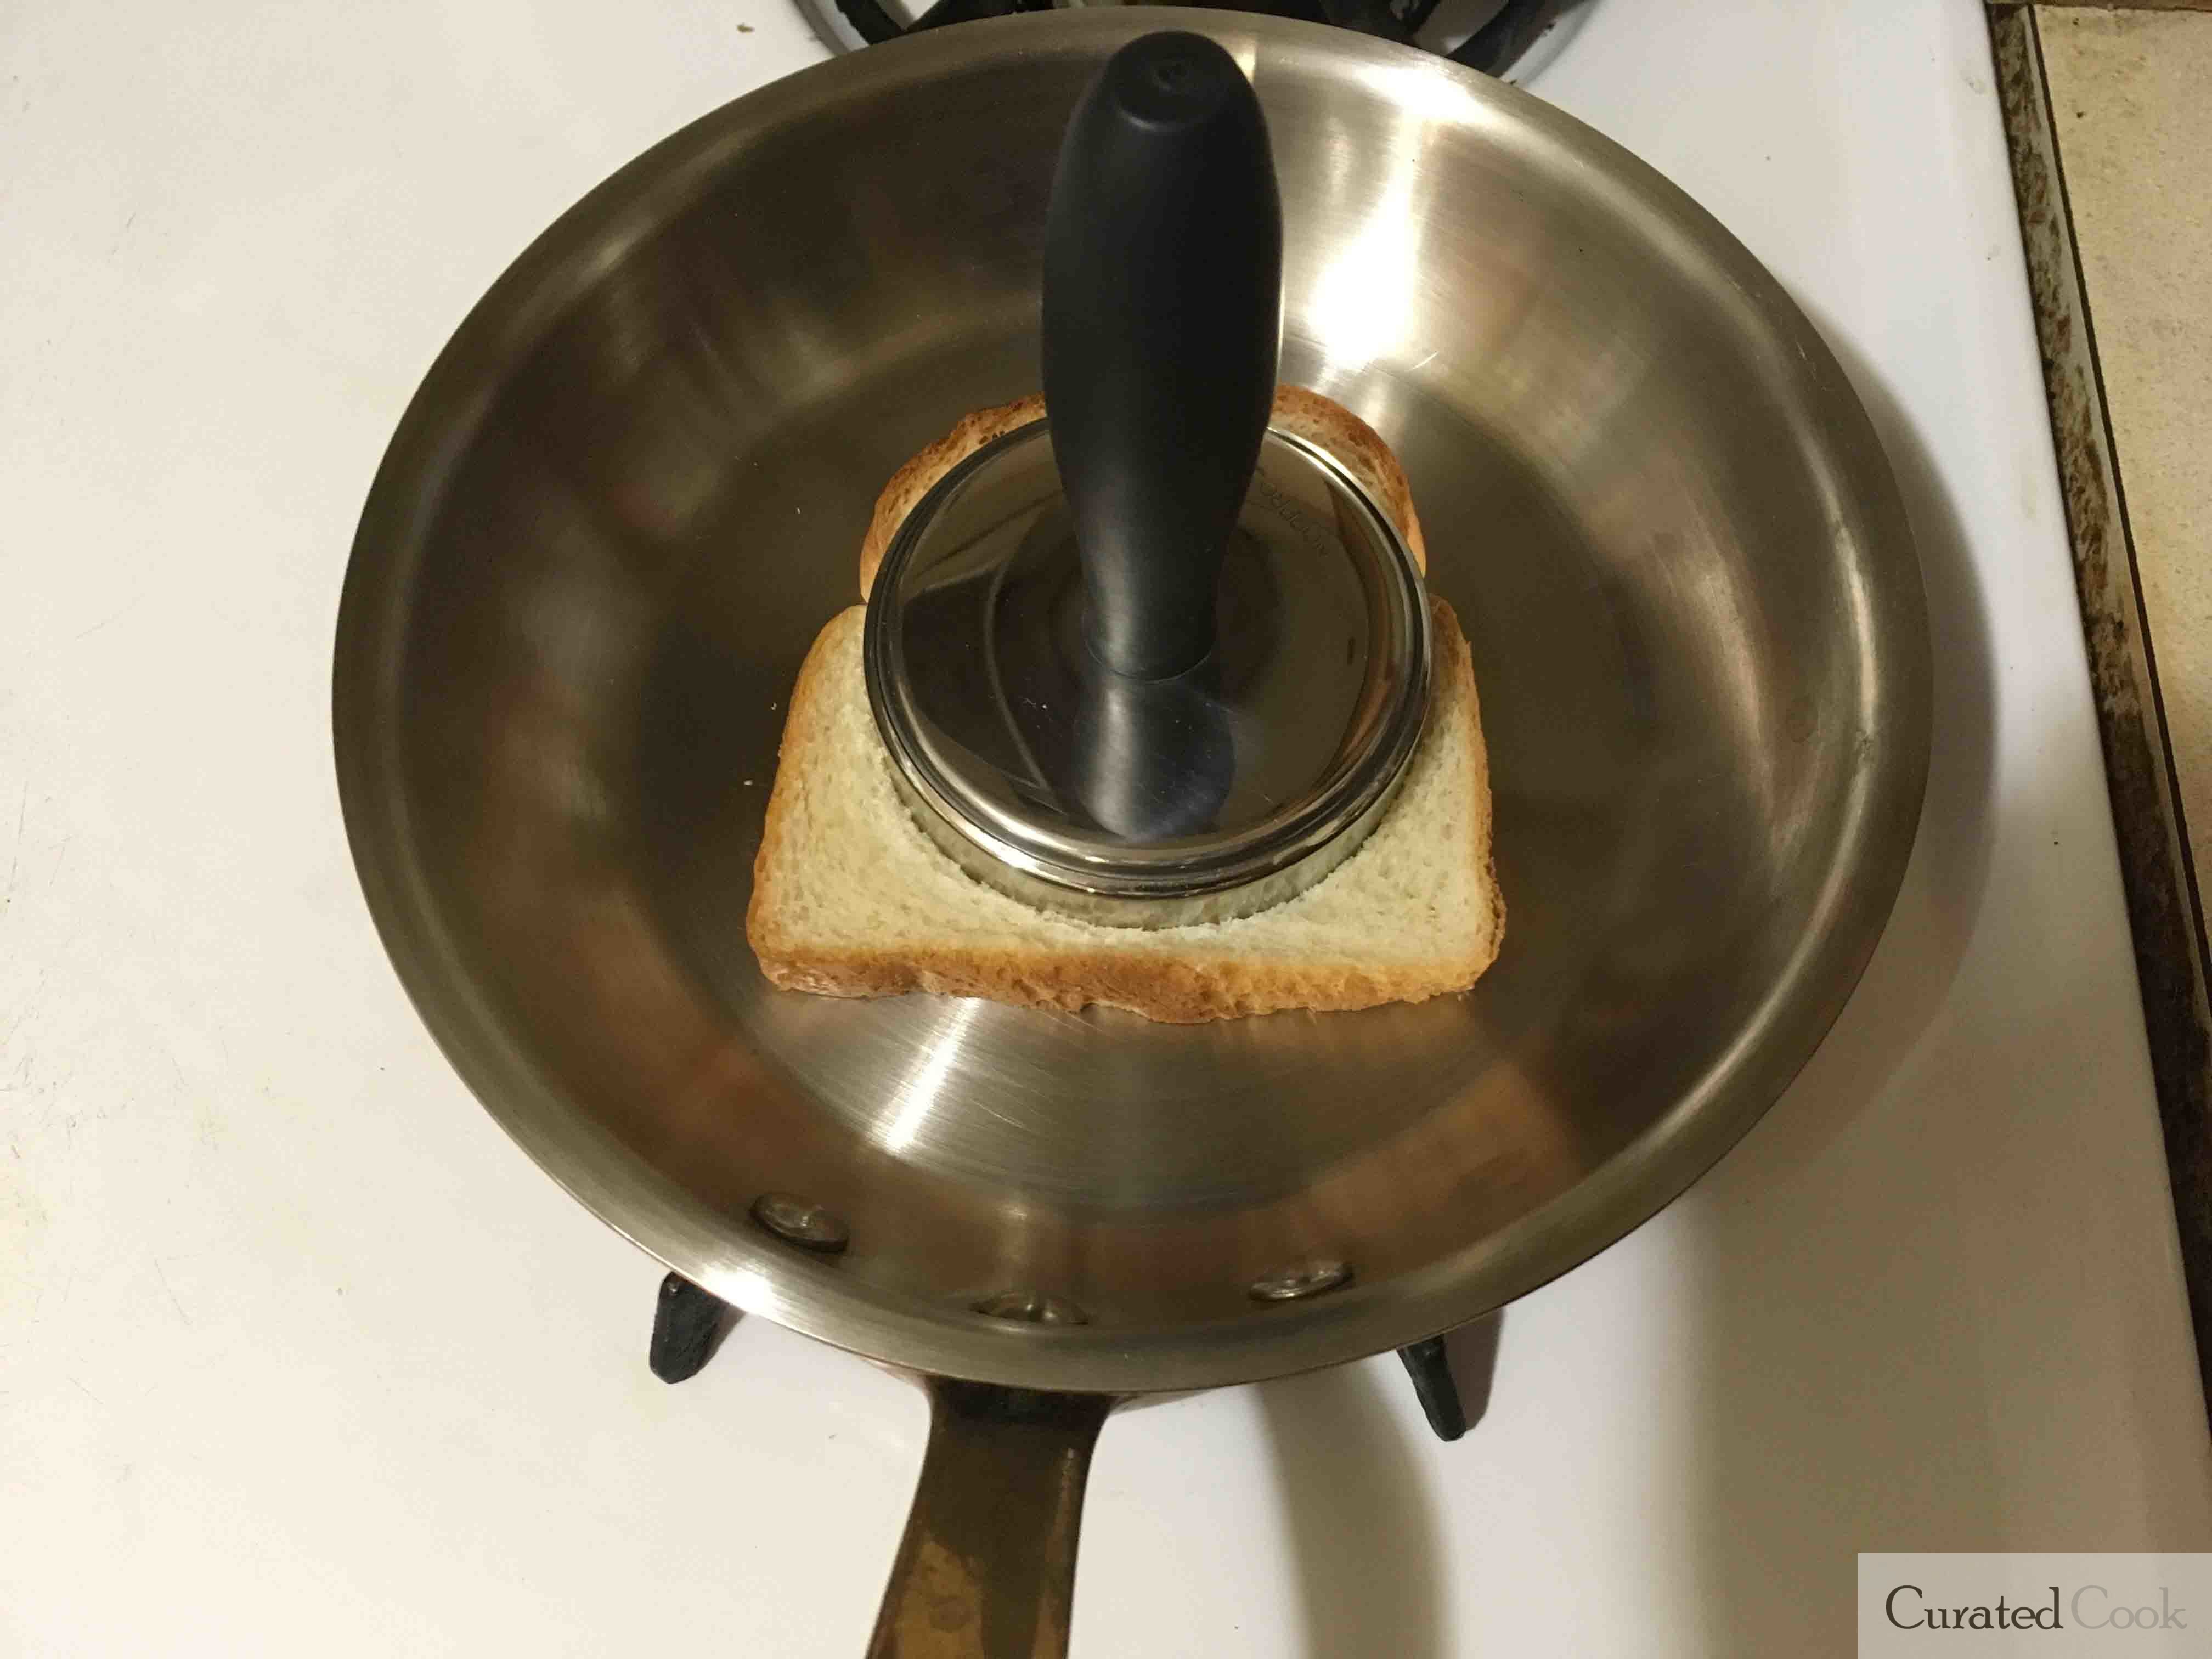 Mauviel Skillet Toast test